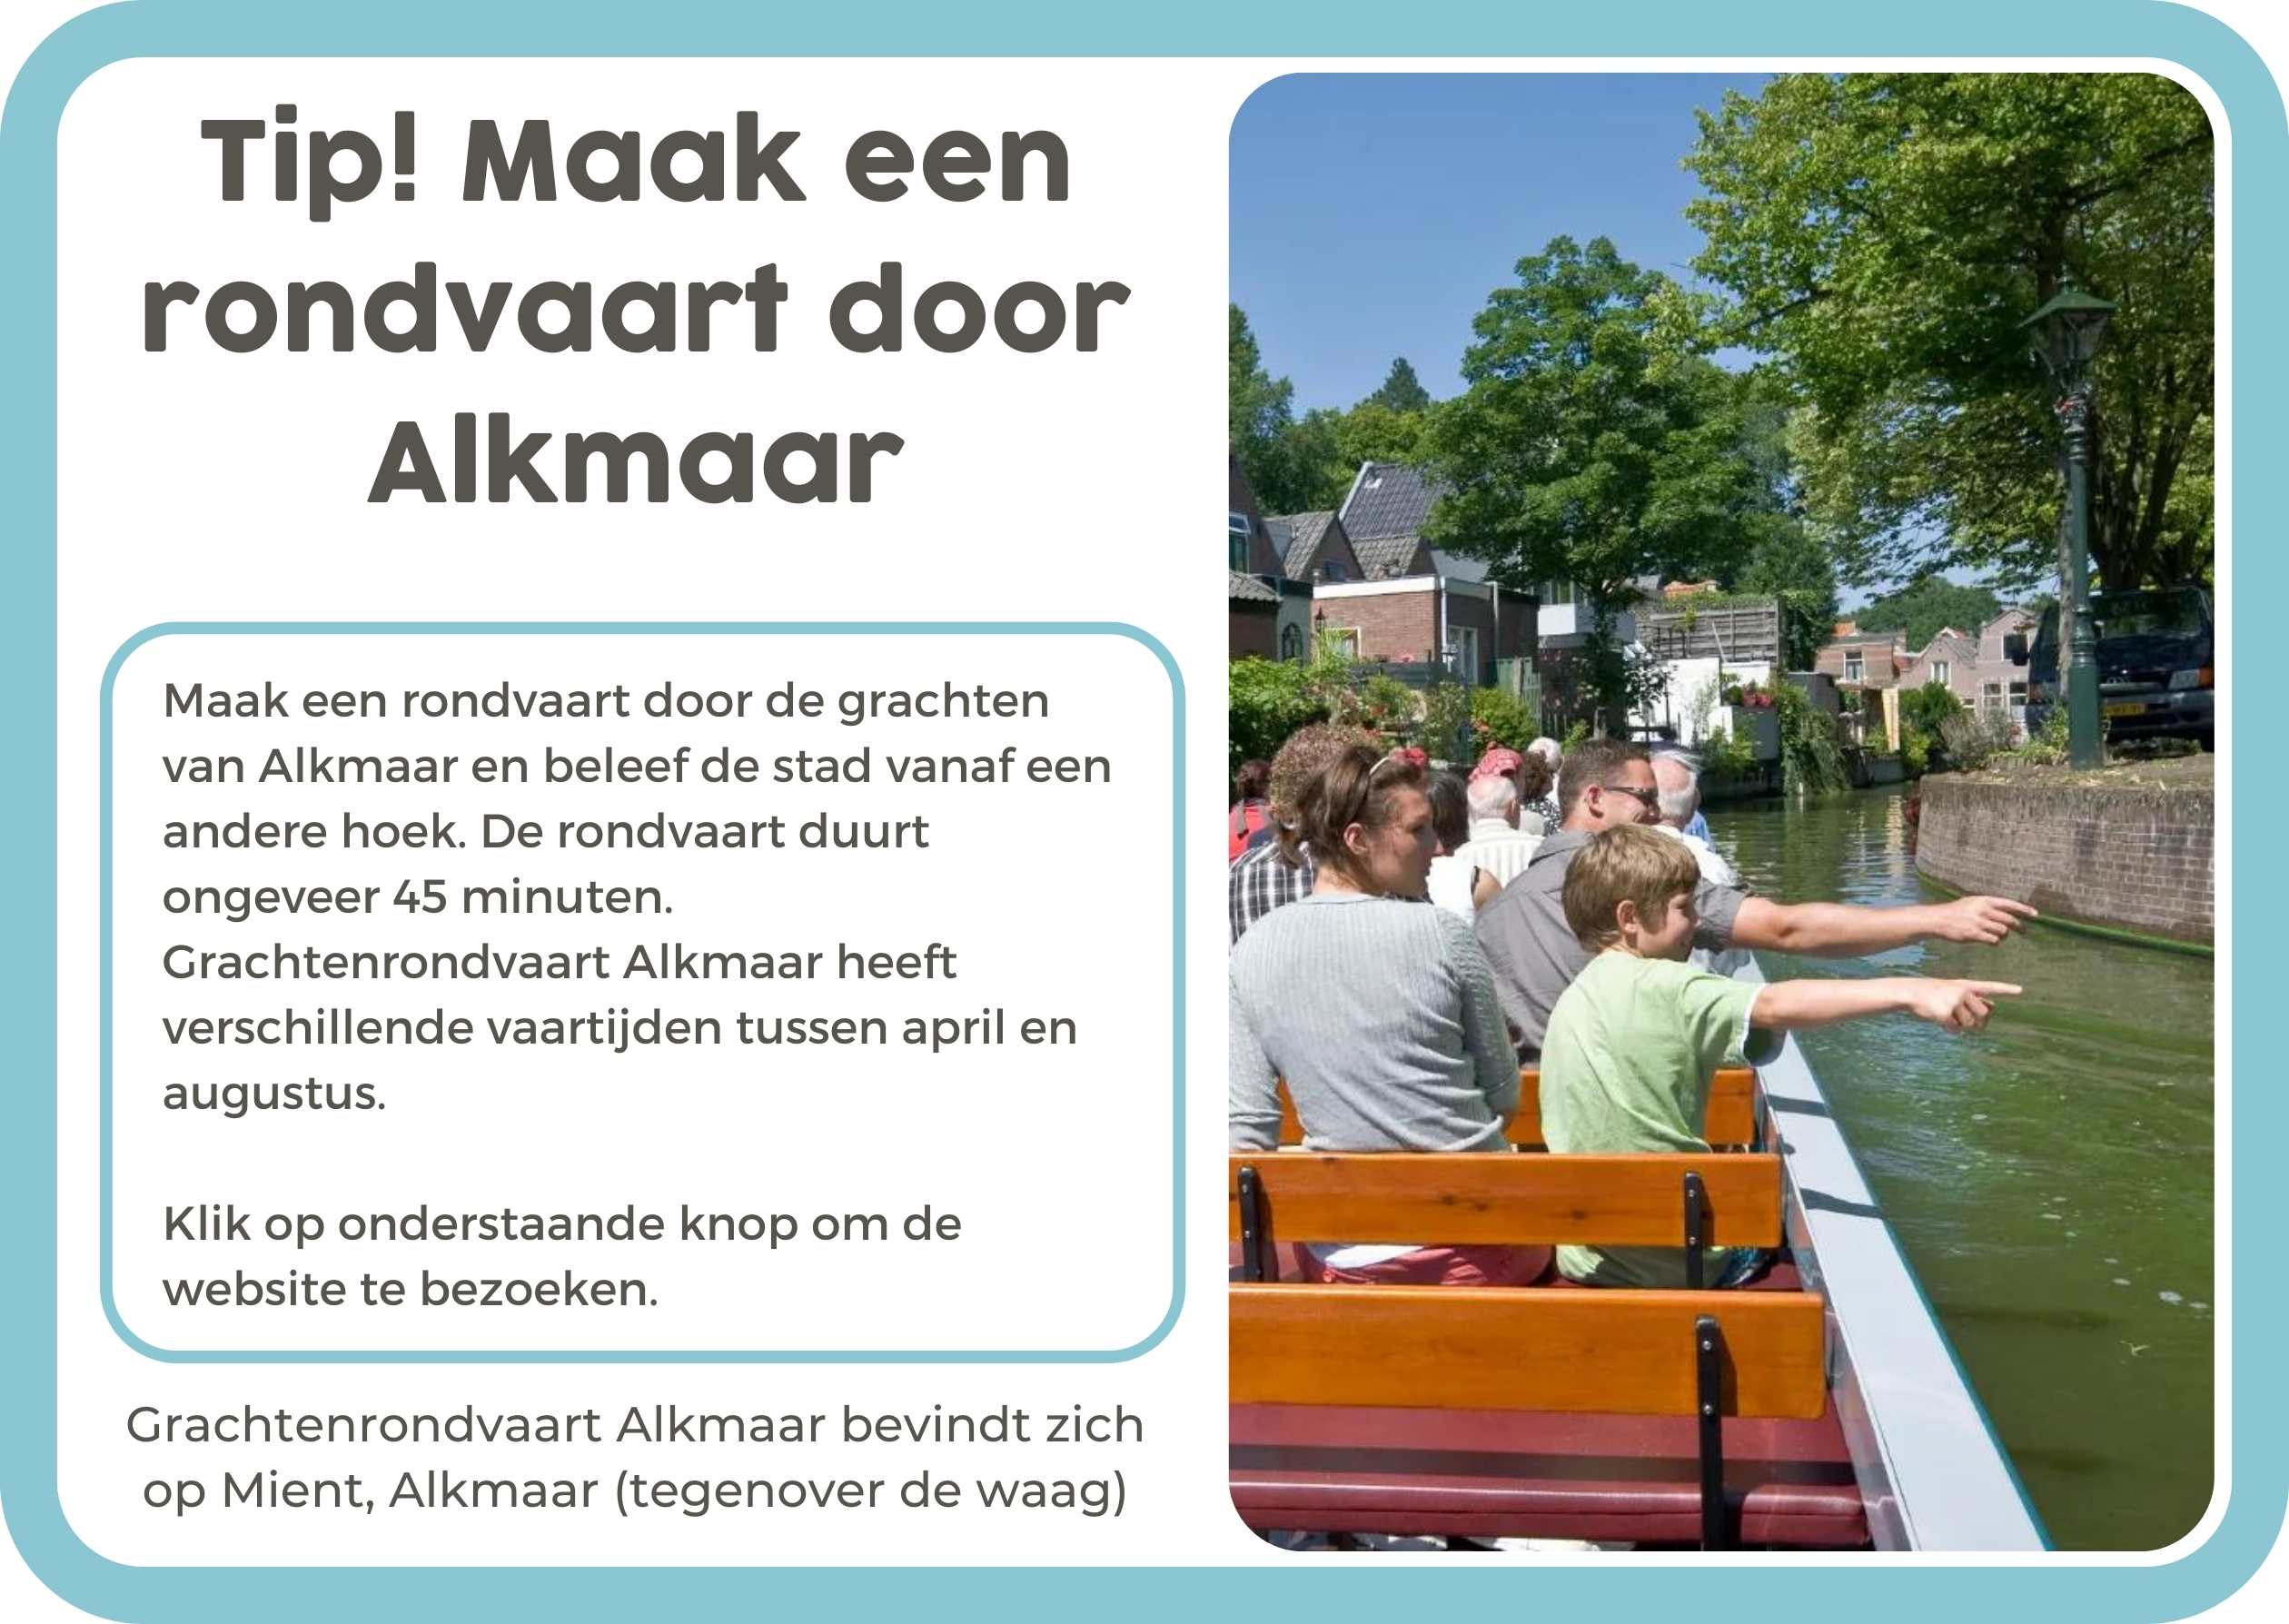 8. Rondvaart Alkmaar